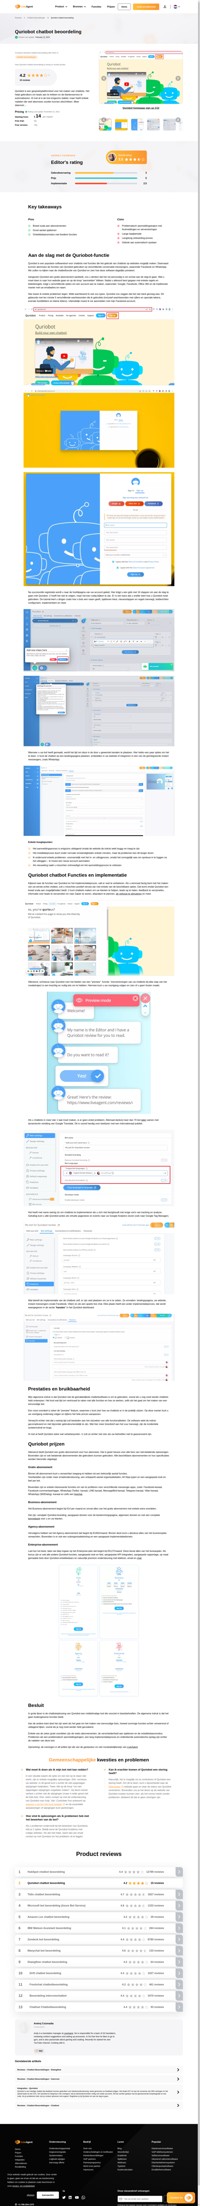 Op zoek naar een chatbottool voor uw bedrijf? Doe met ons mee voor een gedetailleerde Quriobot-chatbotbeoordeling om te zien of het een hulpmiddel is voor uw behoeften.